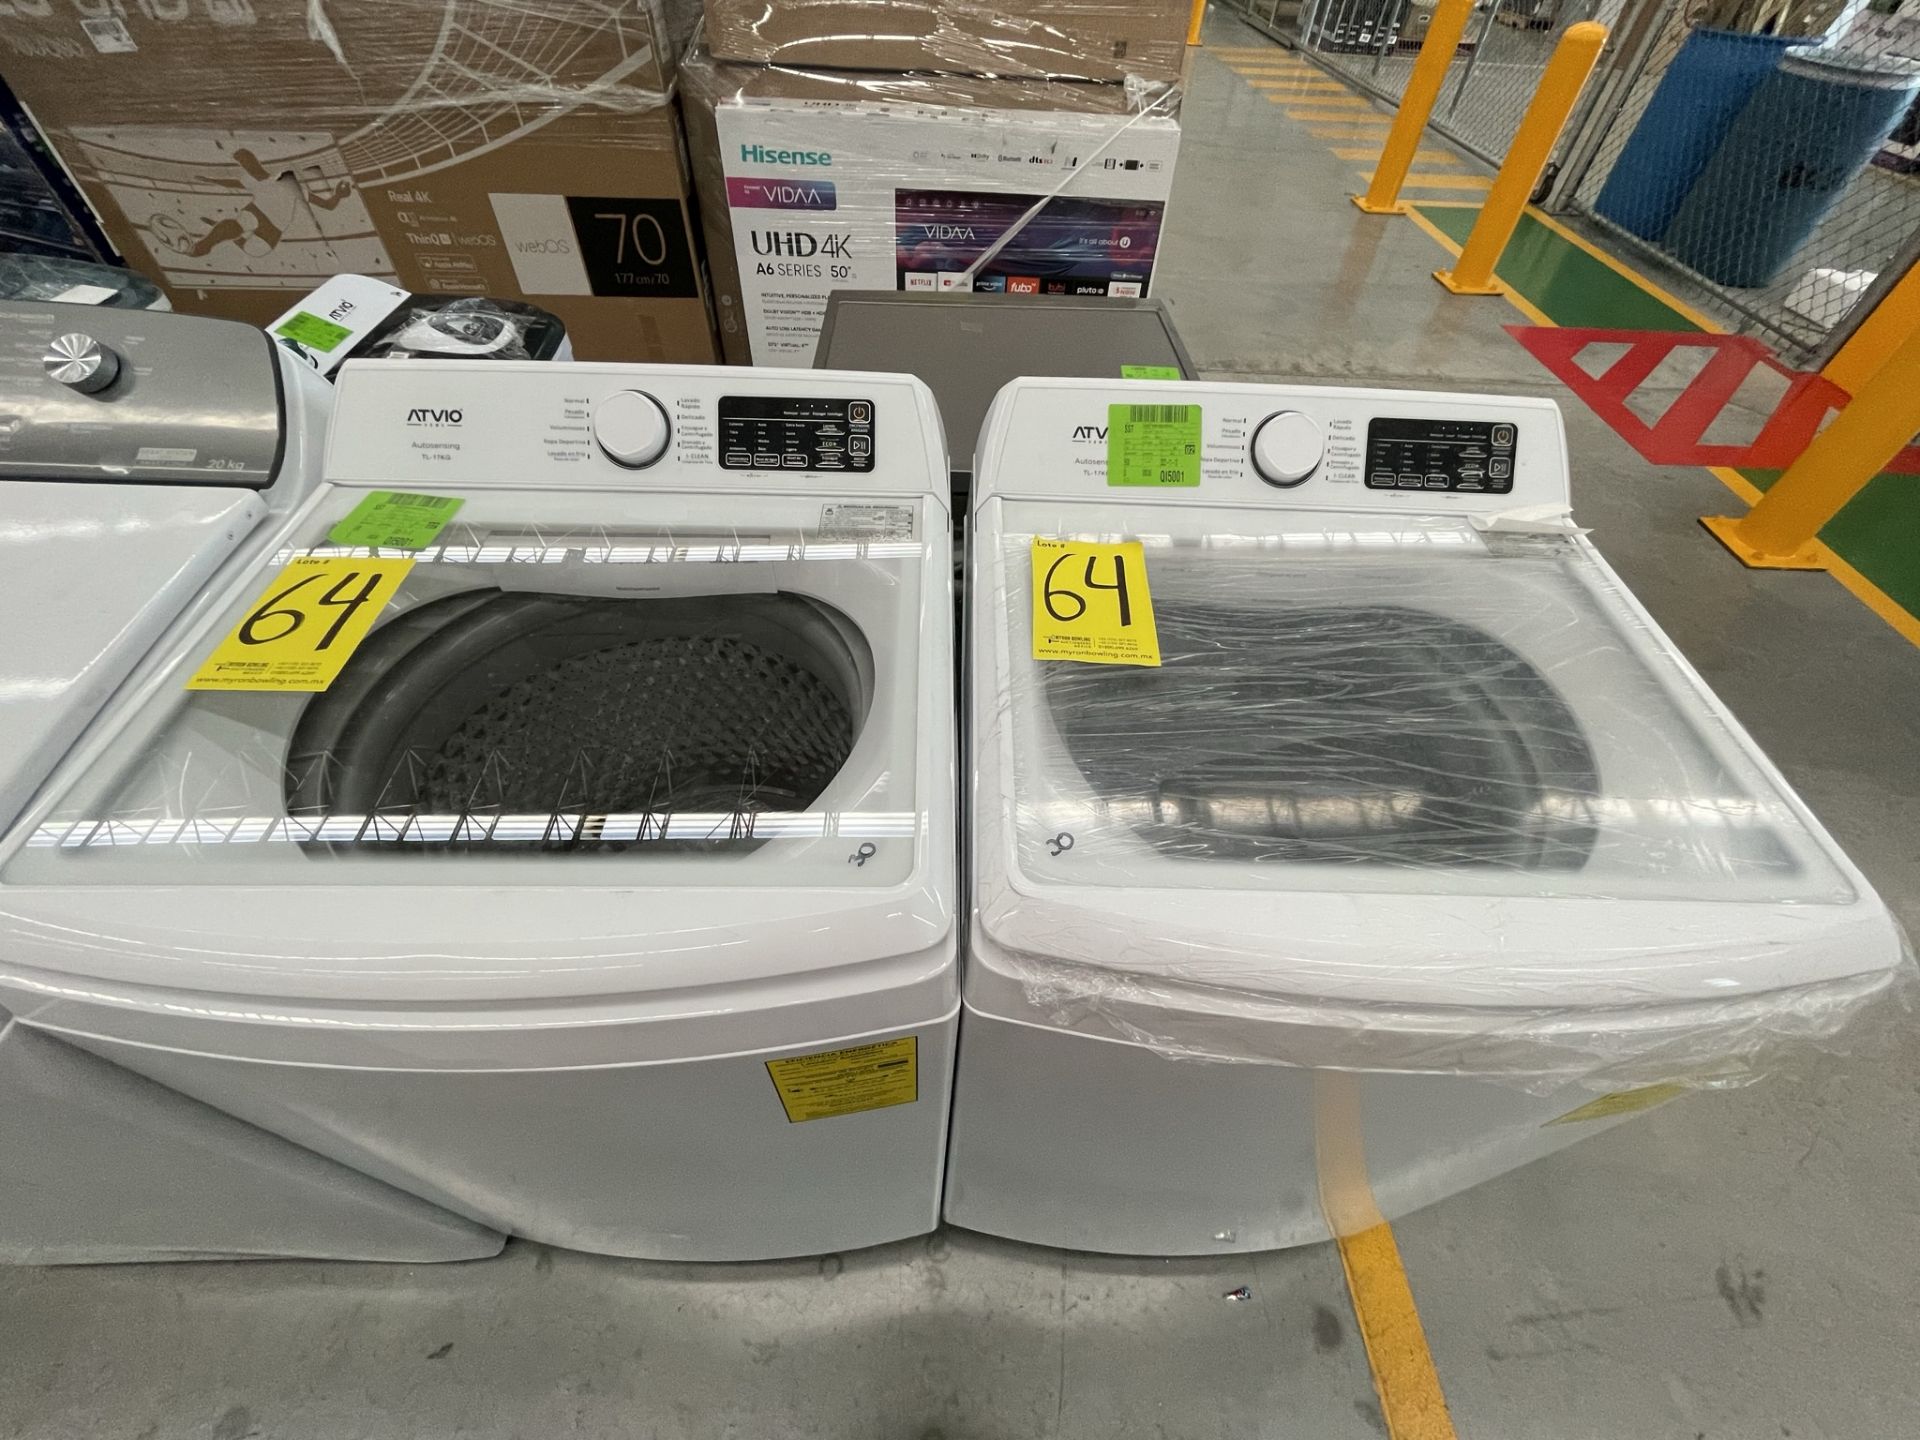 (Detalle estético) Lote de 2 lavadoras contiene: 1 Lavadora de 17 KG Marca ATVIO, ModeloTL17KG, Ser